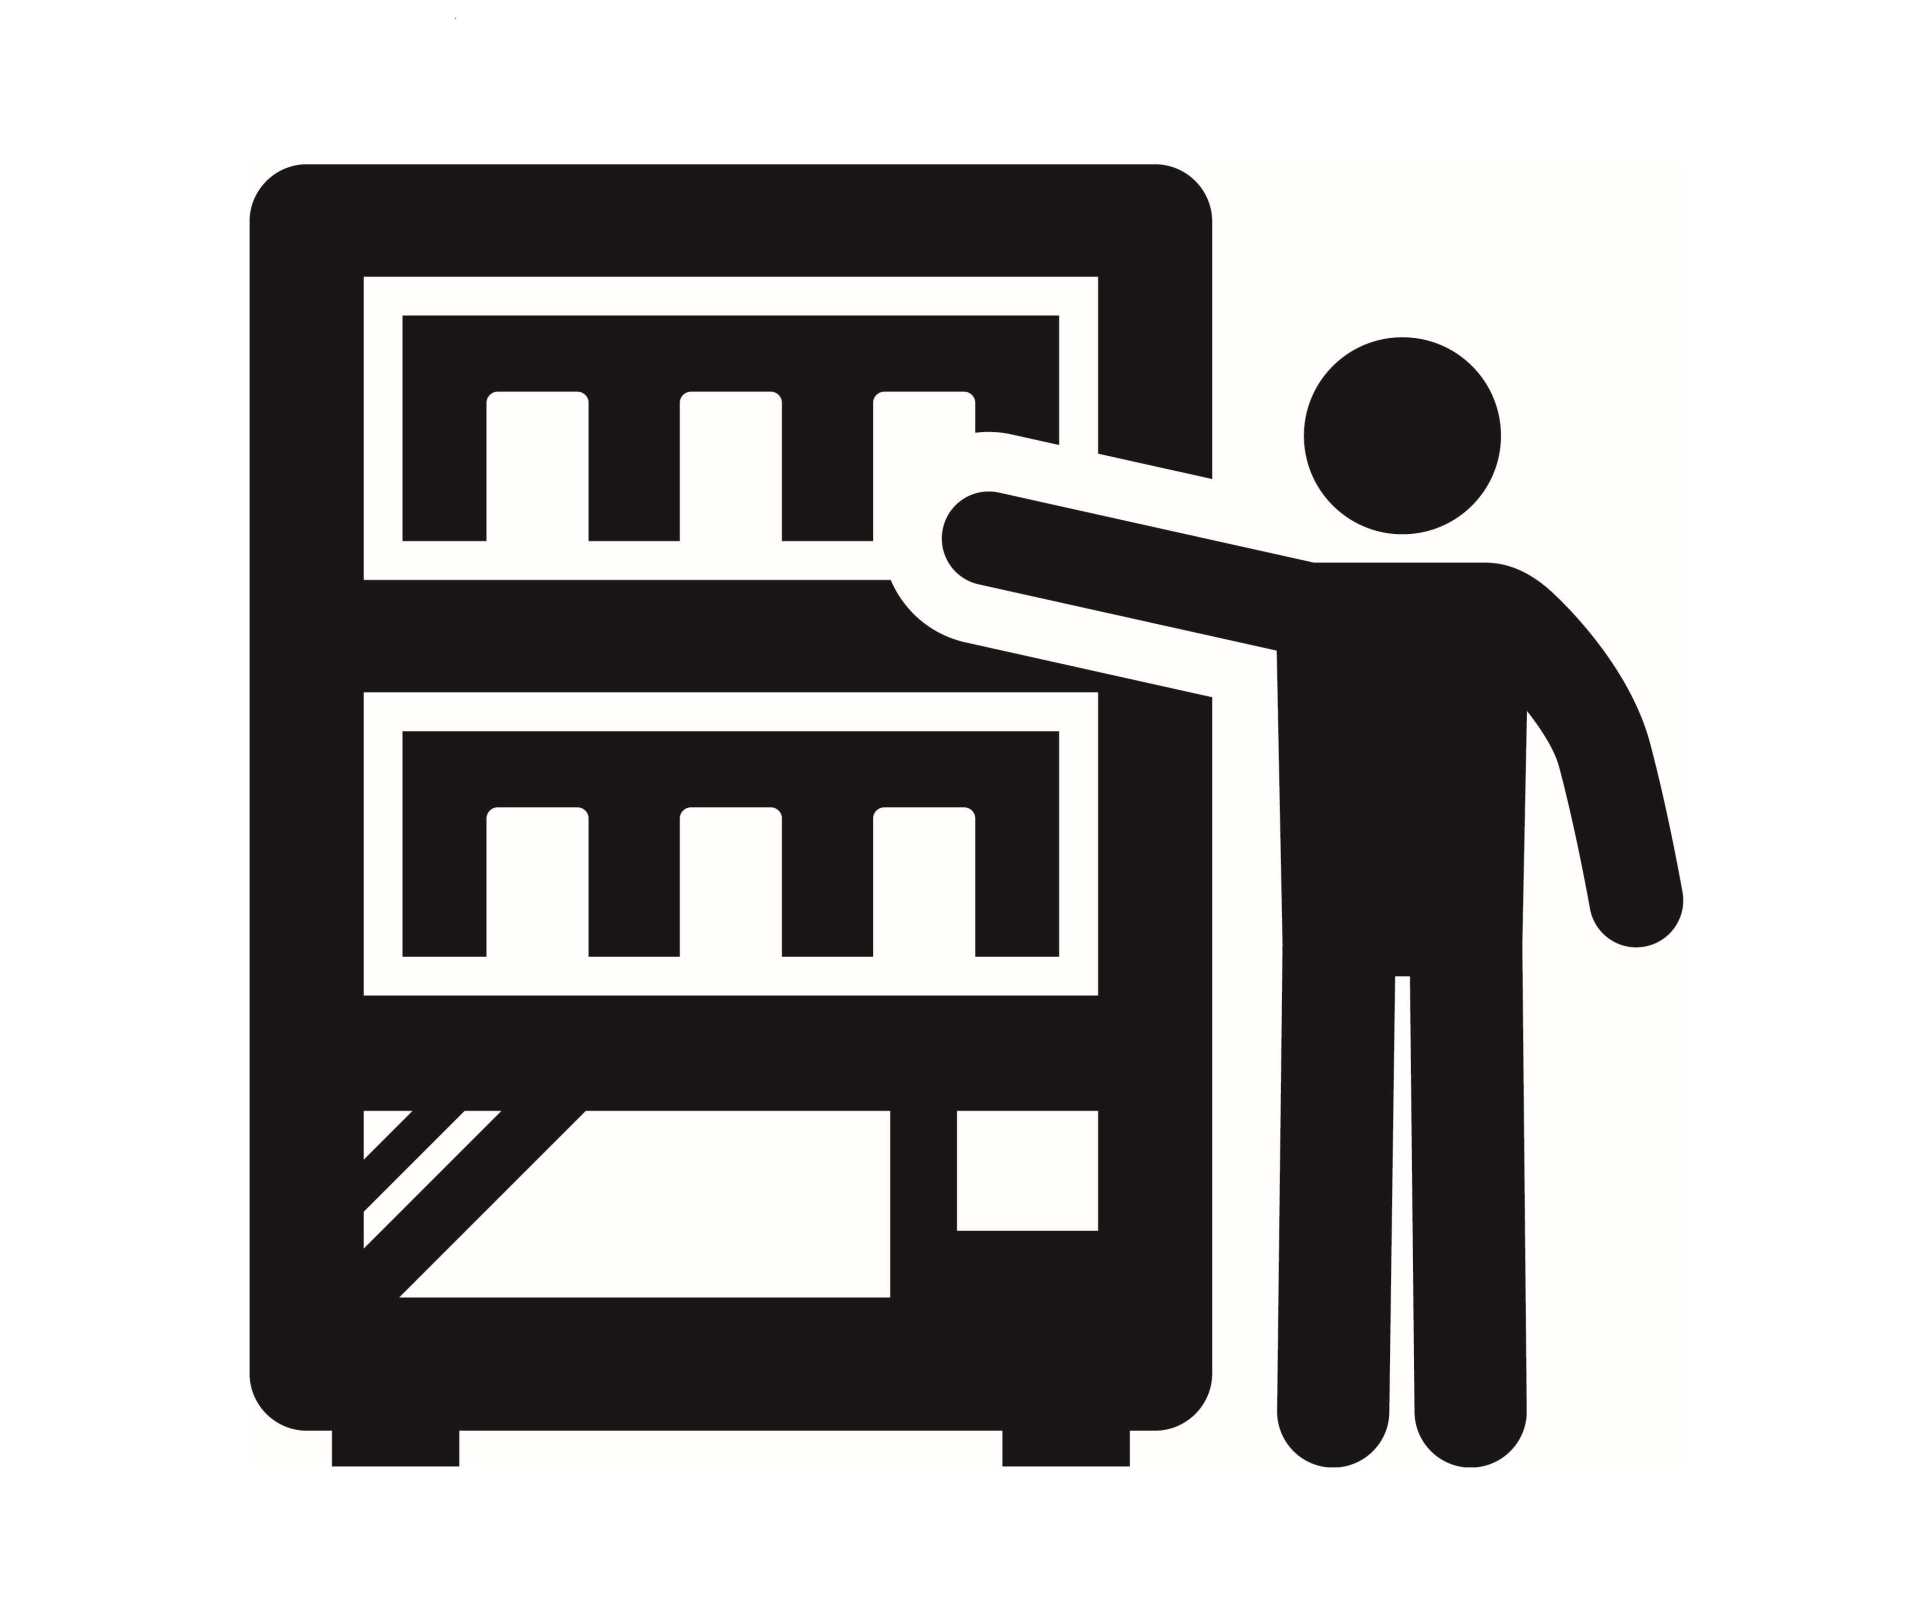 自動販売機設置場所貸付入札の活性化